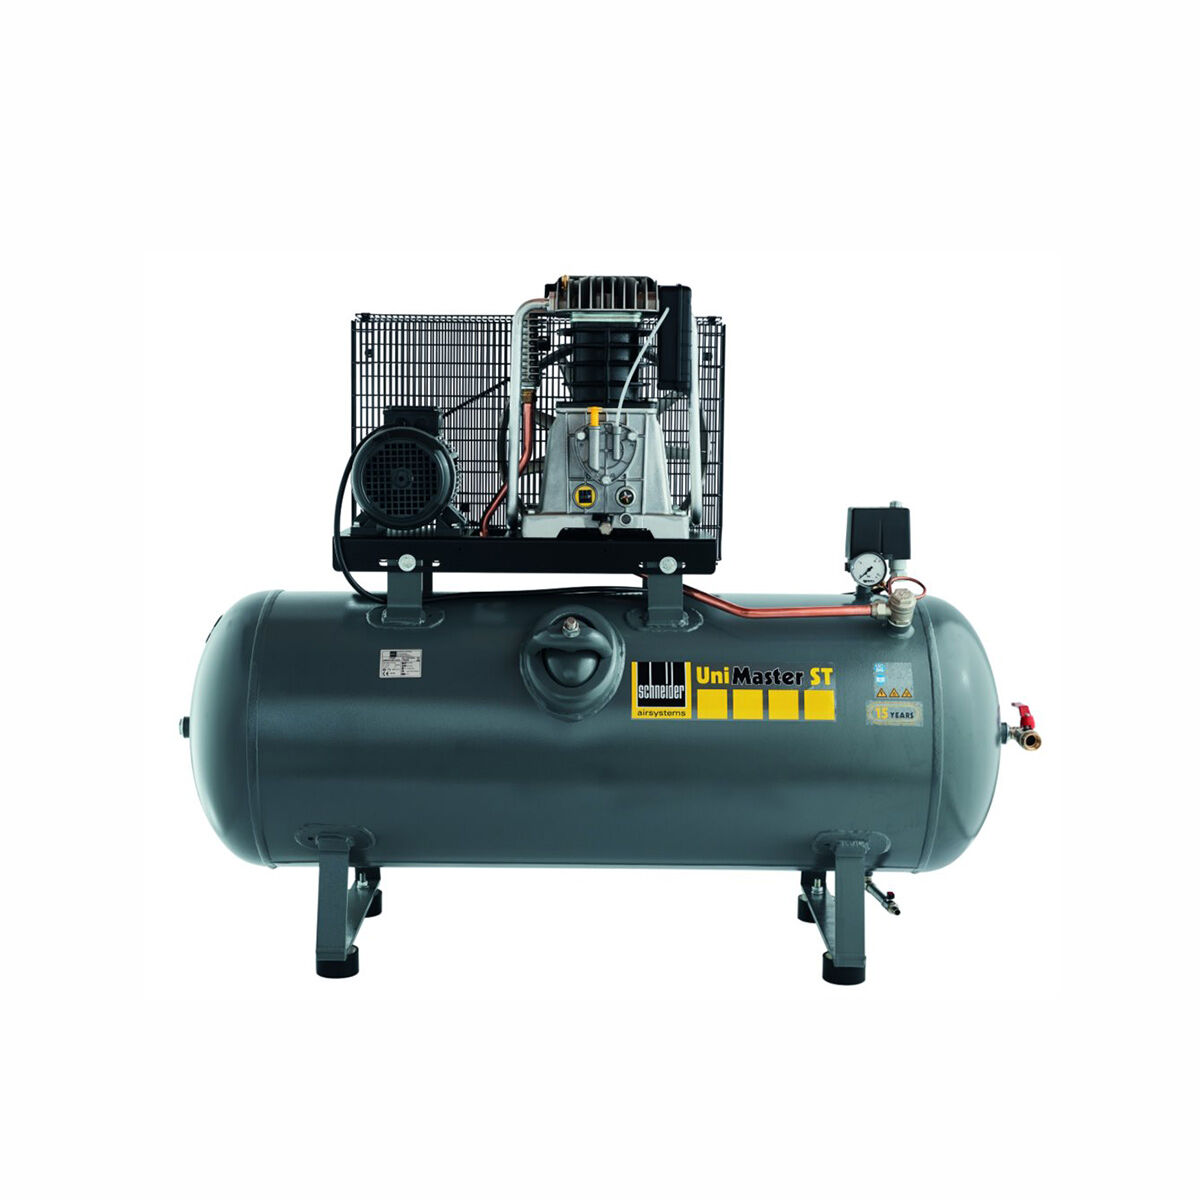 Schneider-Kompressor UNM STL 1000-15-500 C 1121580515